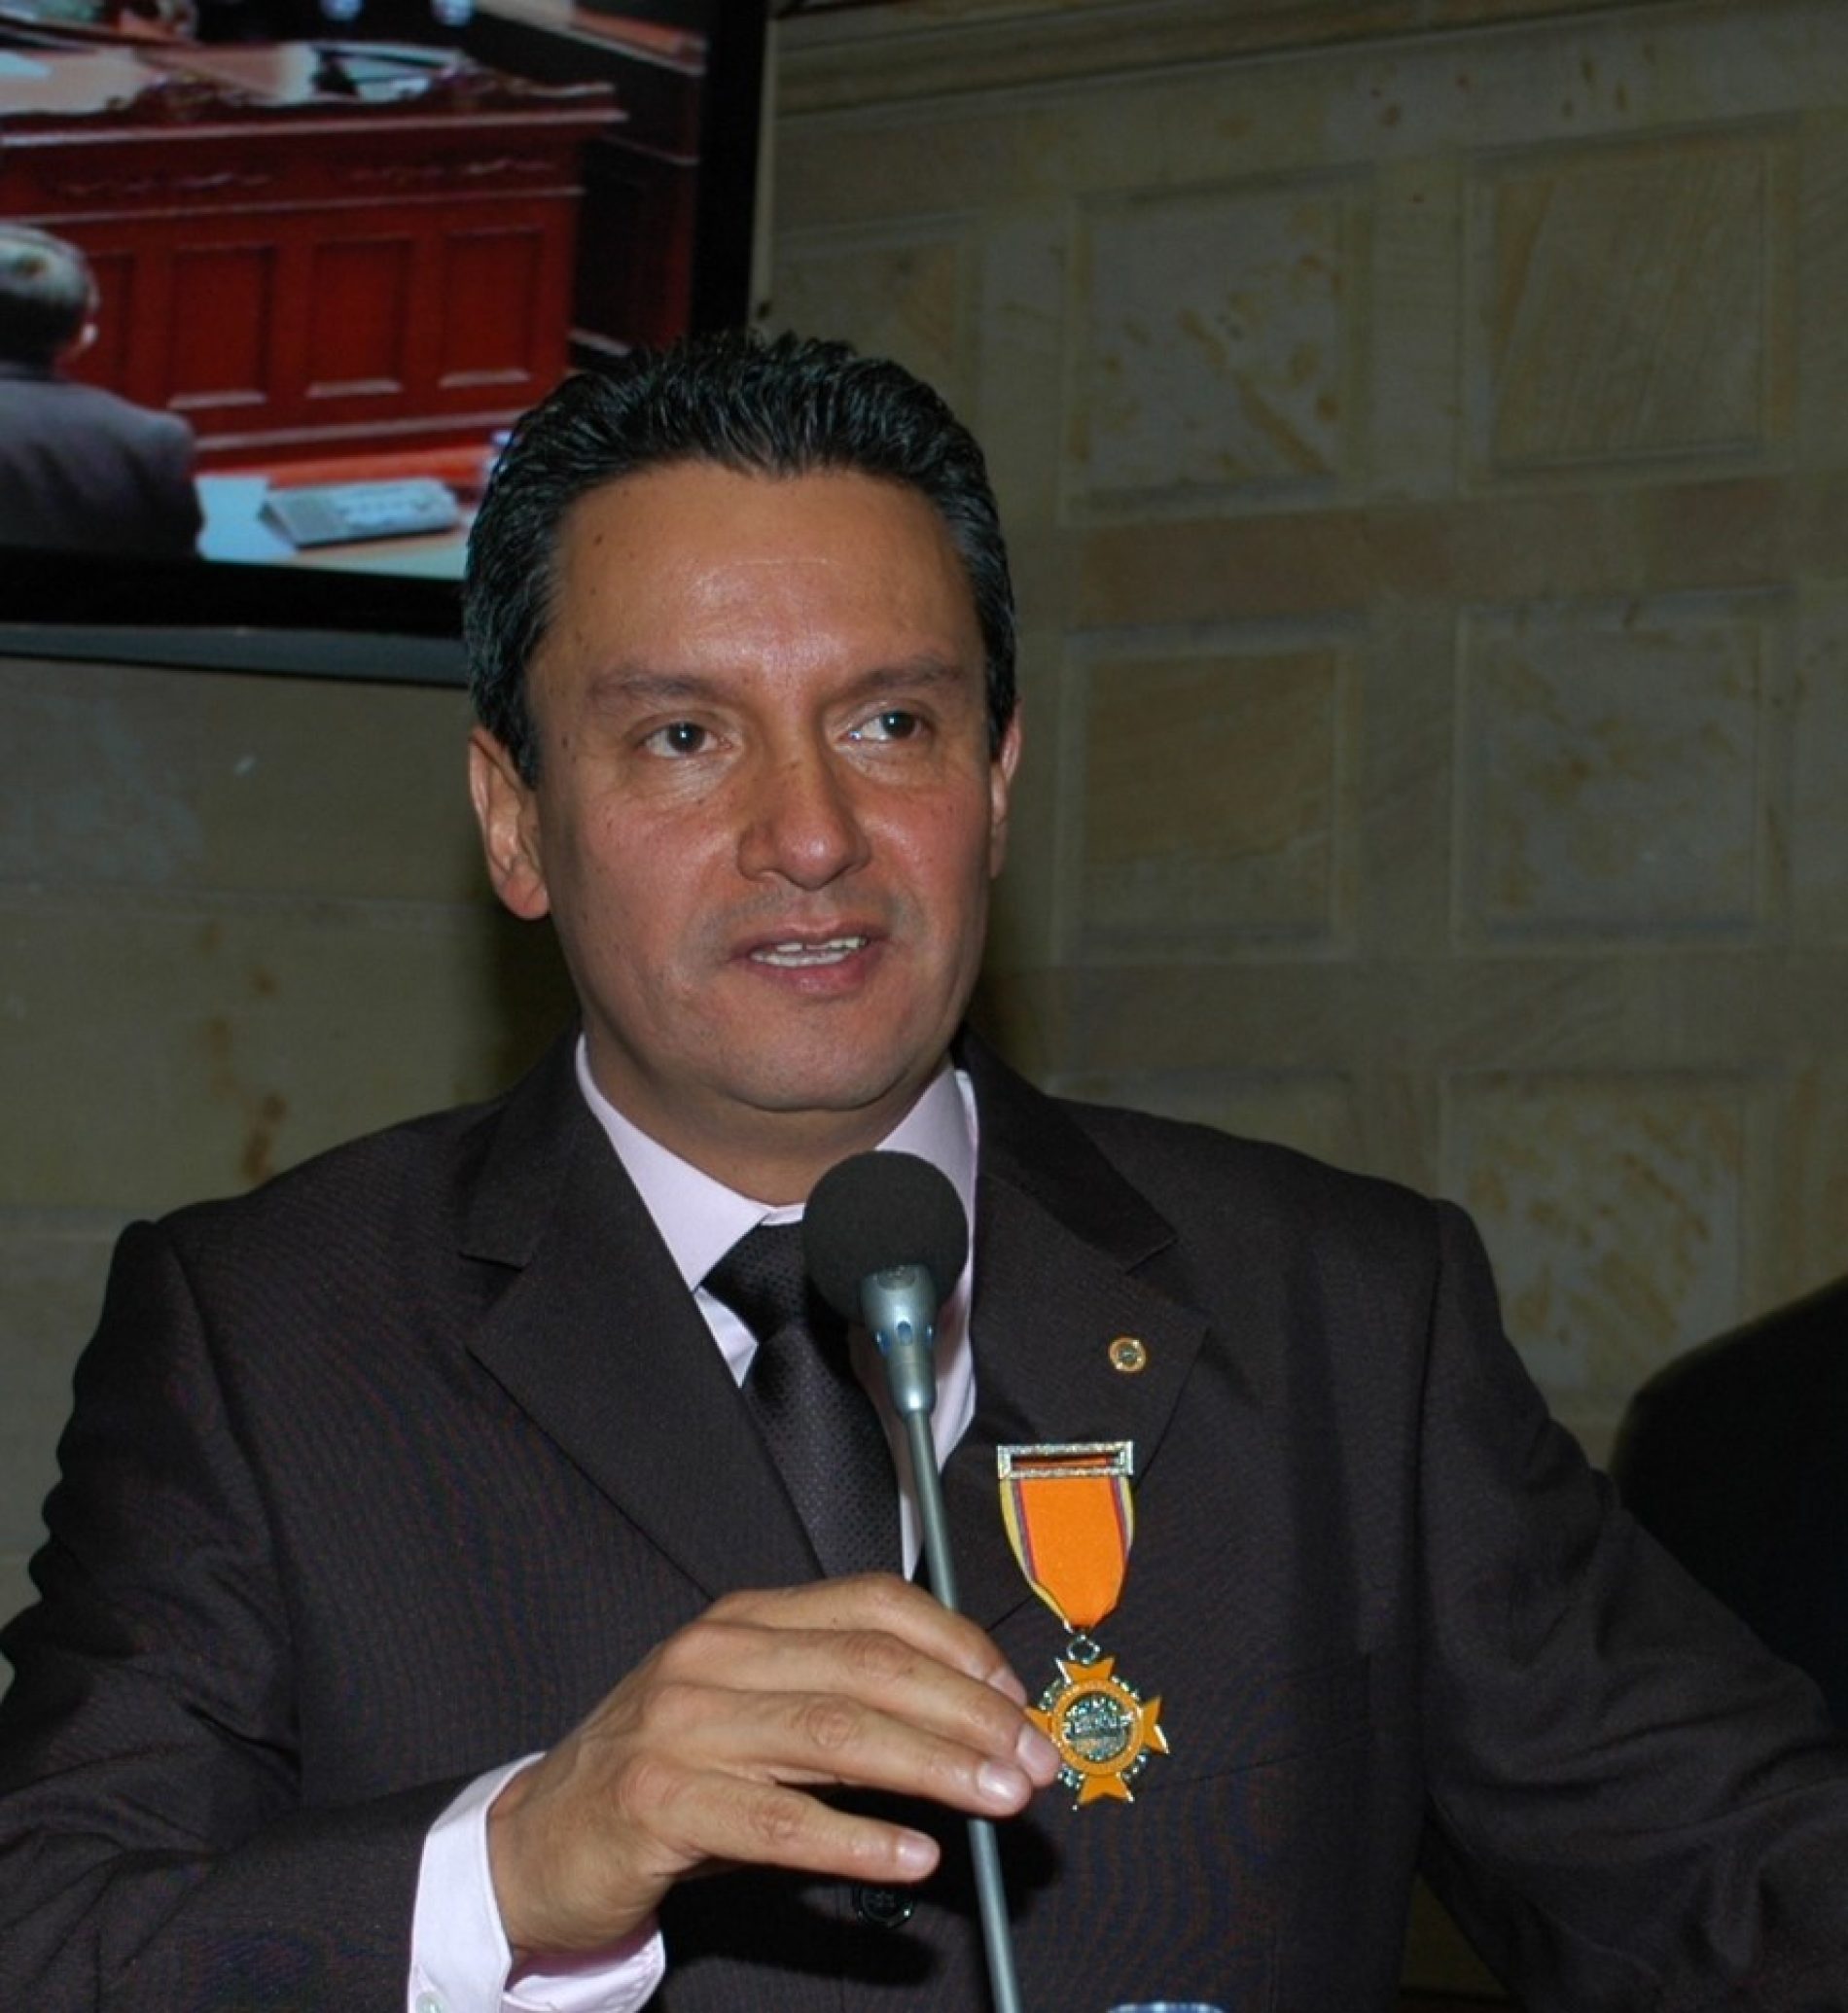 GUSTAVO CASASBUENAS VIVAS: SIMBOLO DE LA SOCIEDAD COLOMBIANA DE PRENSA